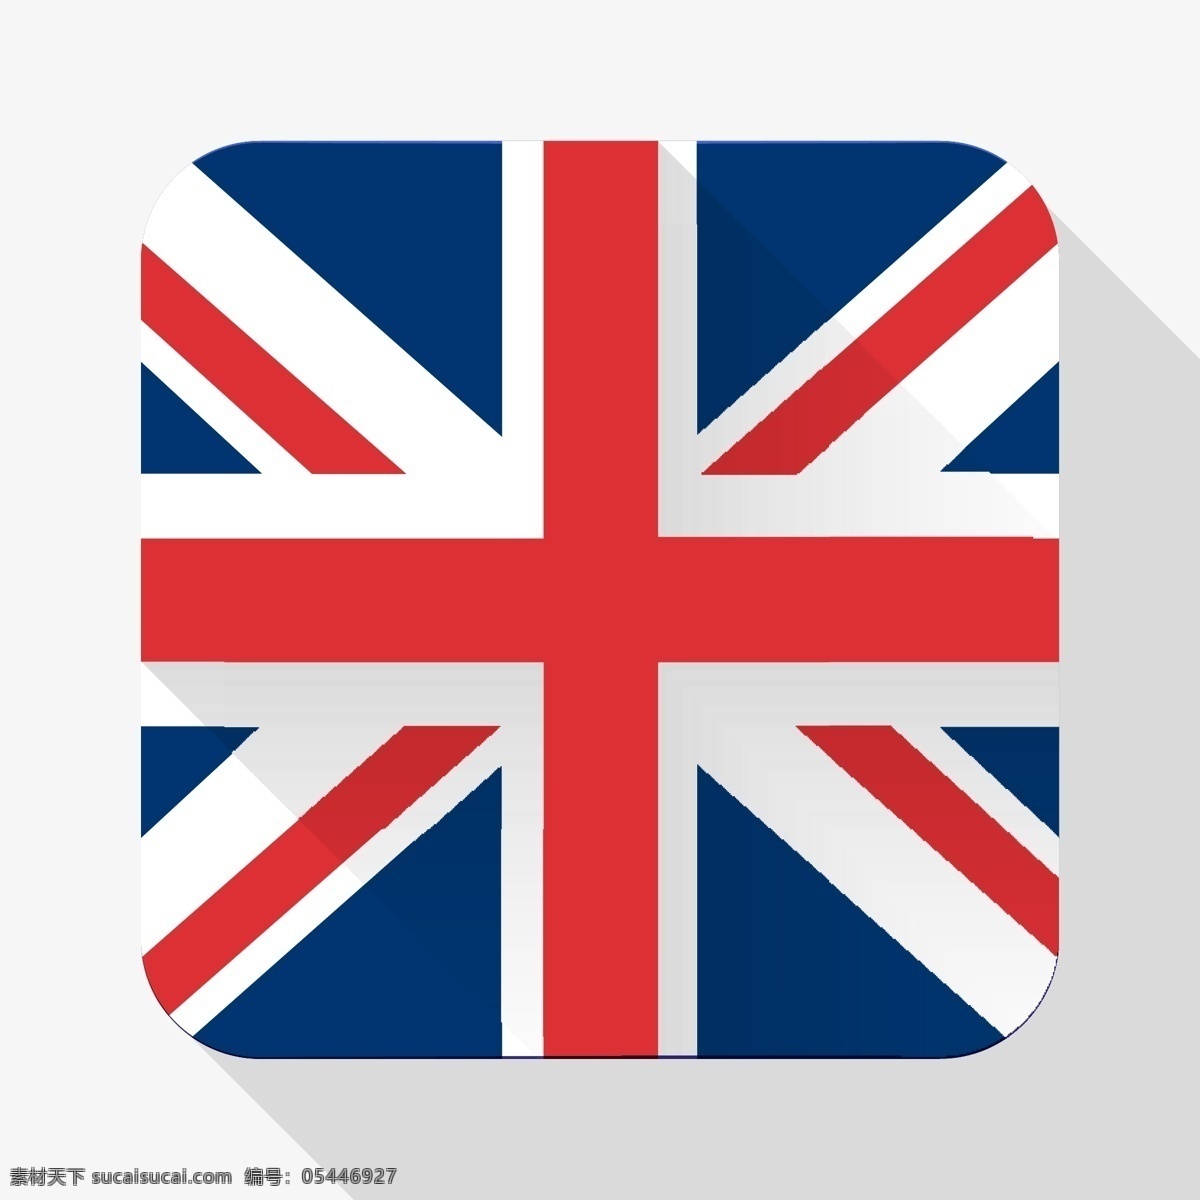 英国 国旗 矢量 图标 英国国旗 米字旗 卡通图标 立体图标 旗帜 旗子 图 标志图标 矢量素材 生活百科 白色